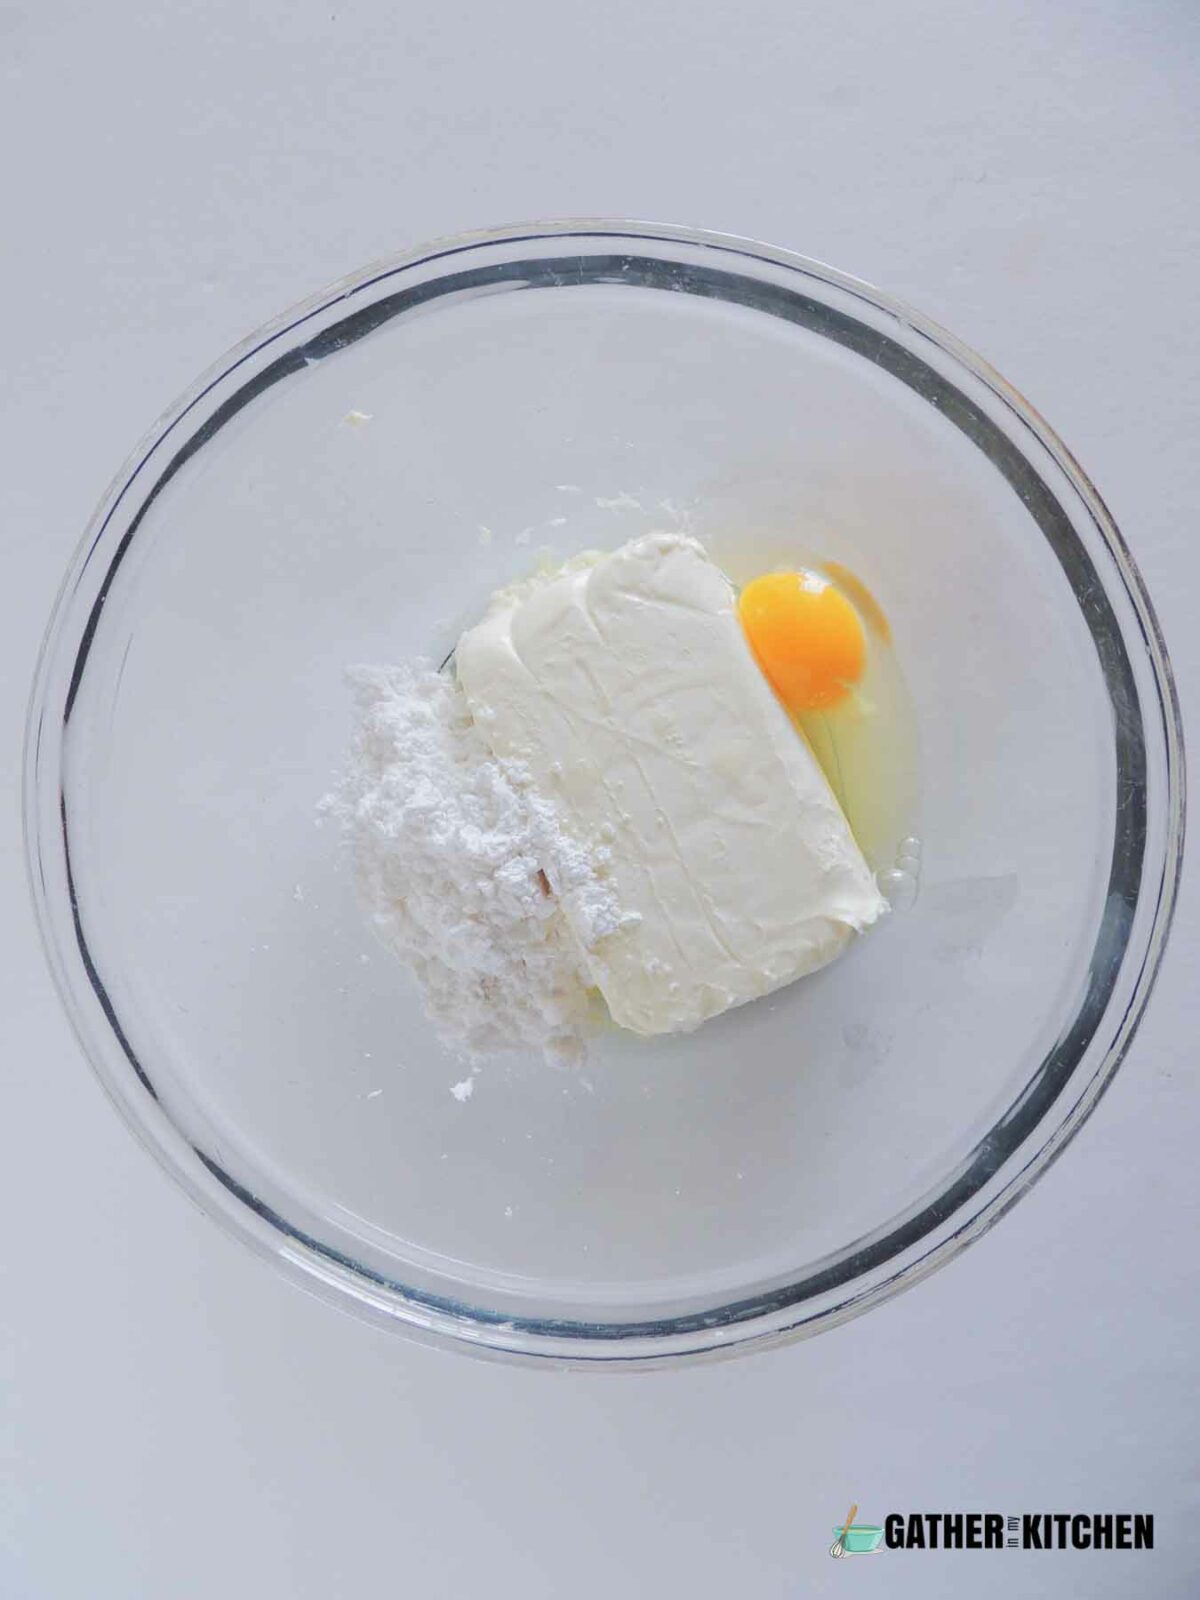 eggs, cream cheese and sugar in a bowl.